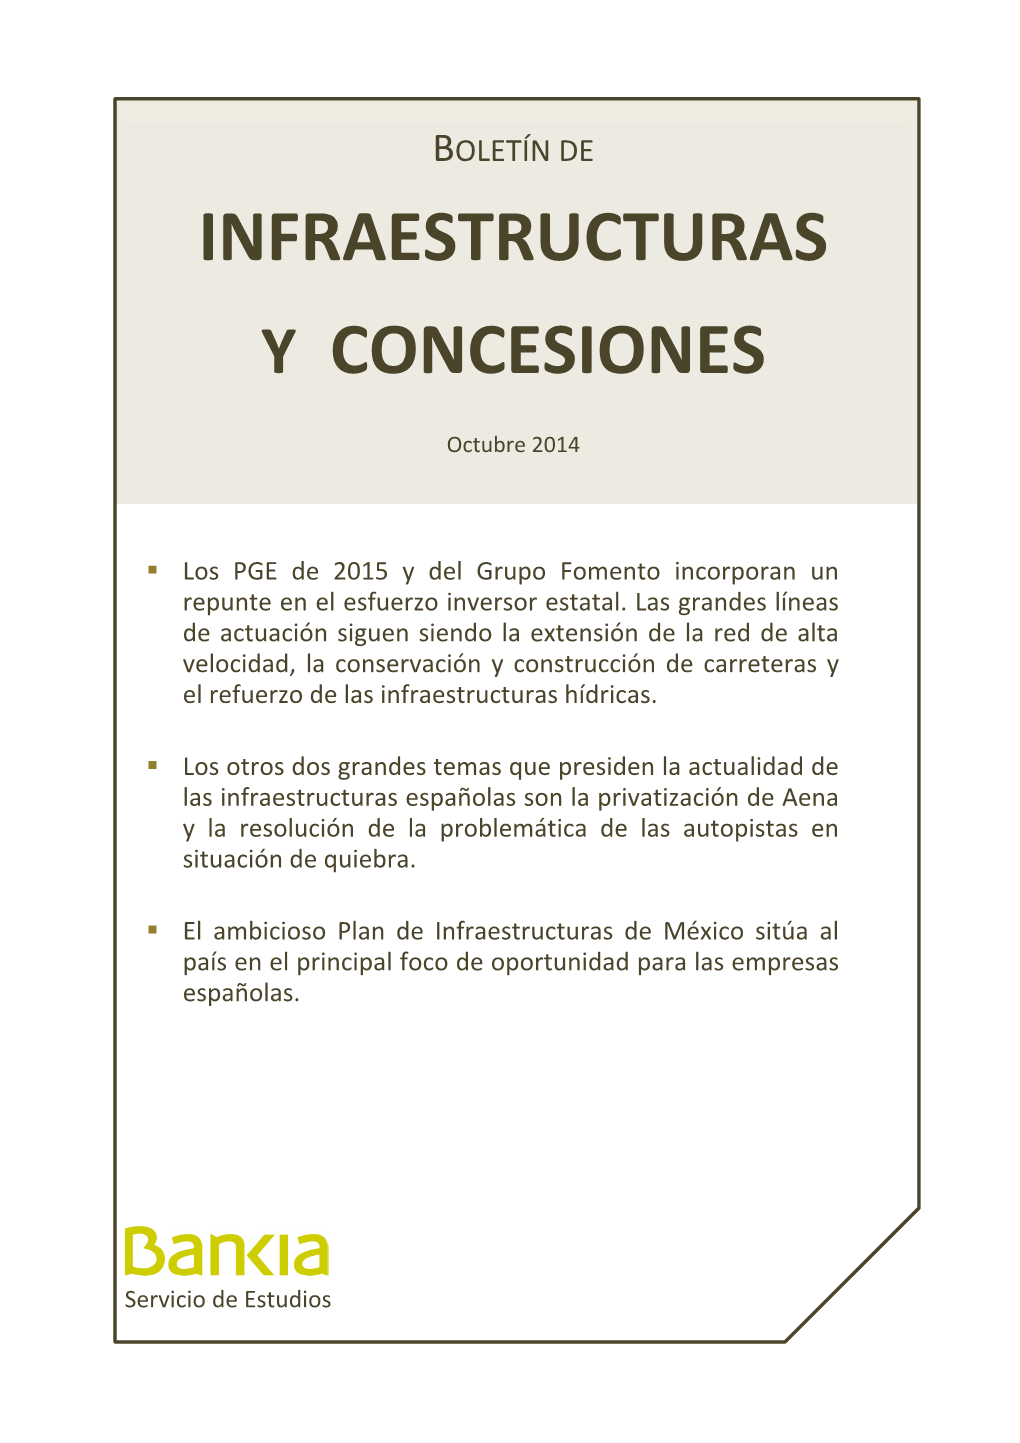 Infraestructuras Y Concesiones